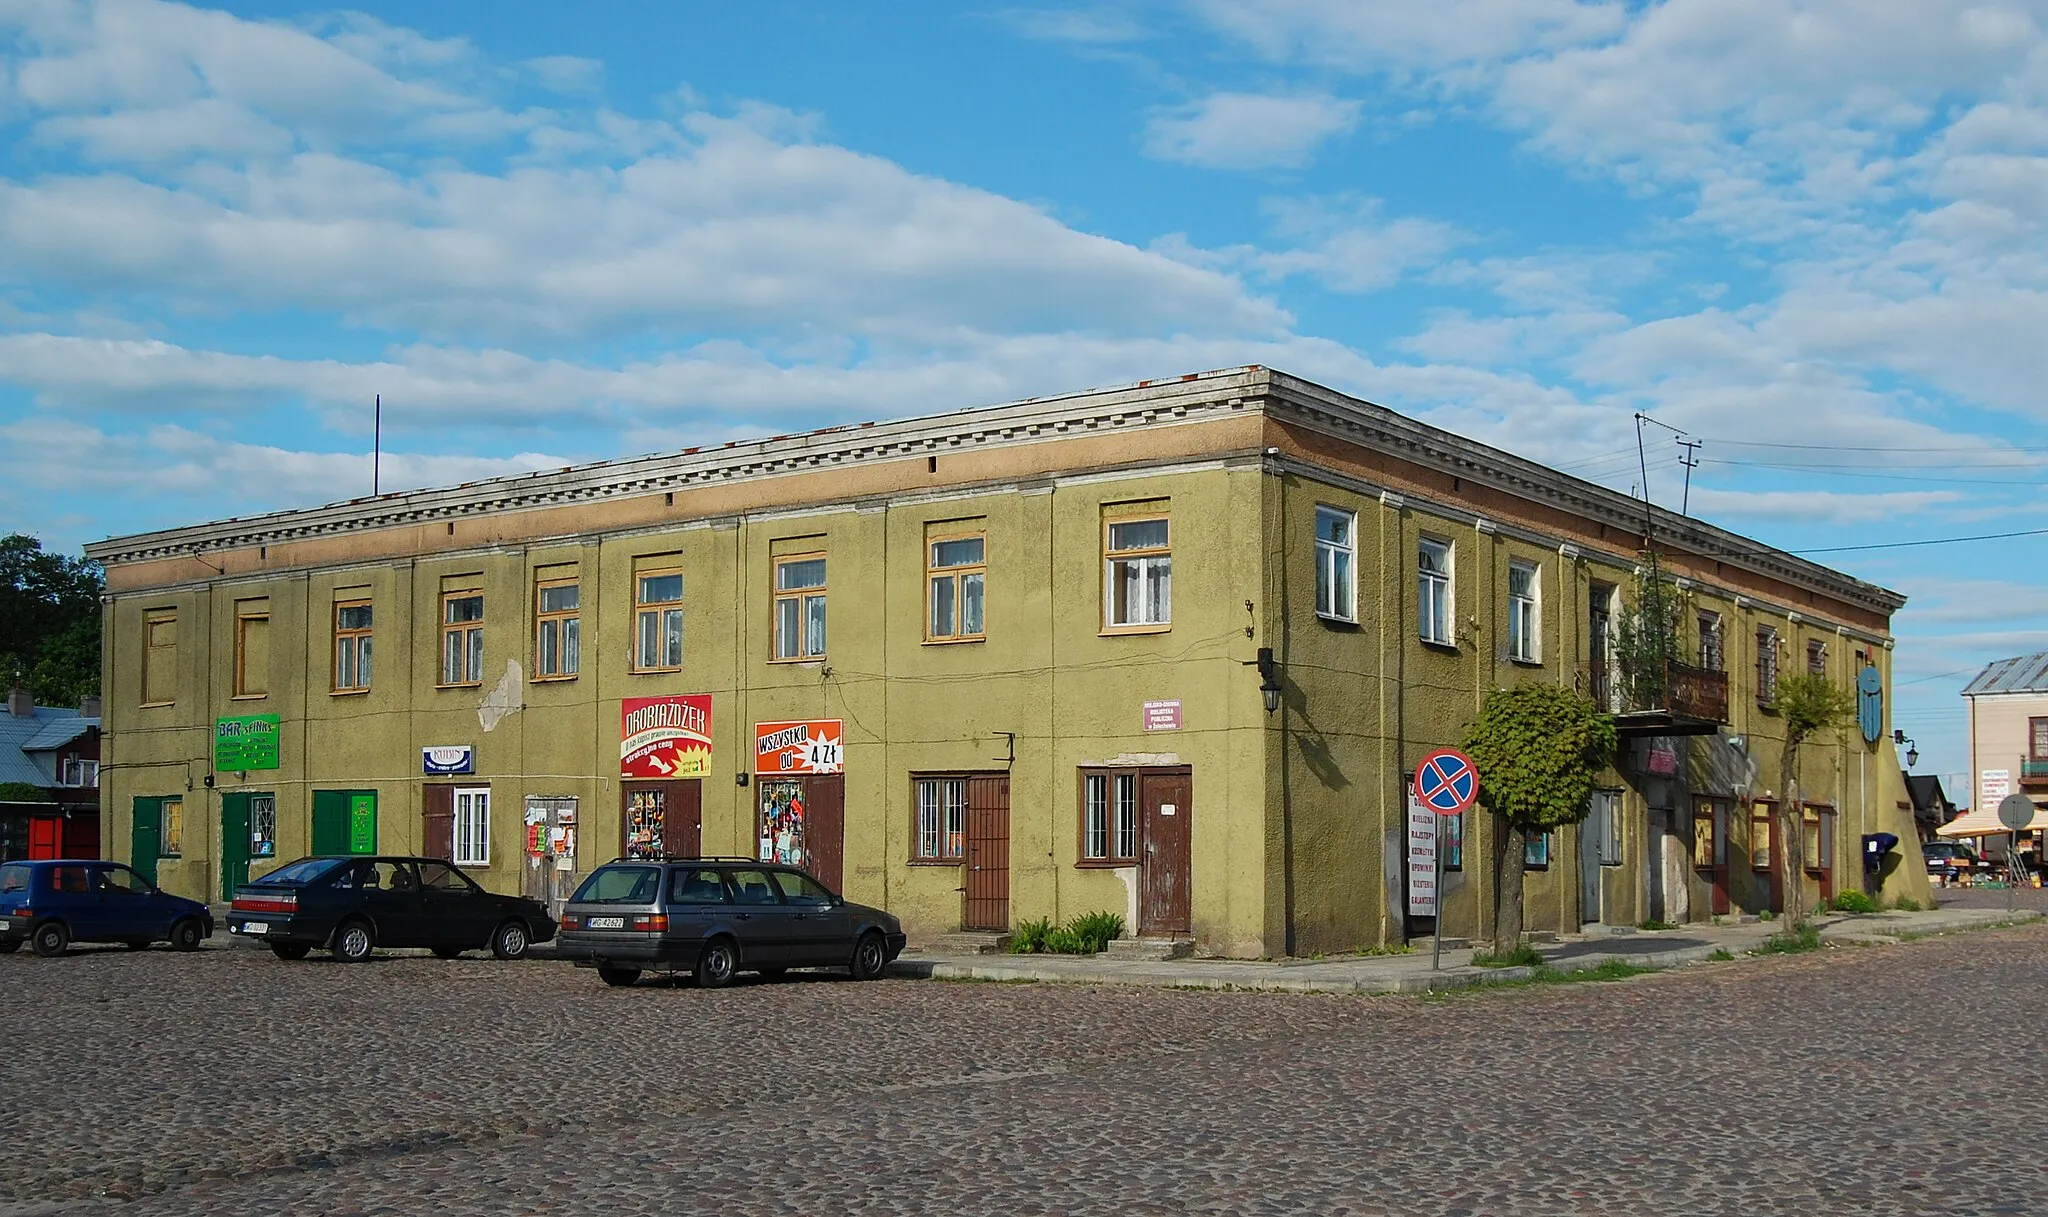 Image of Żelechów